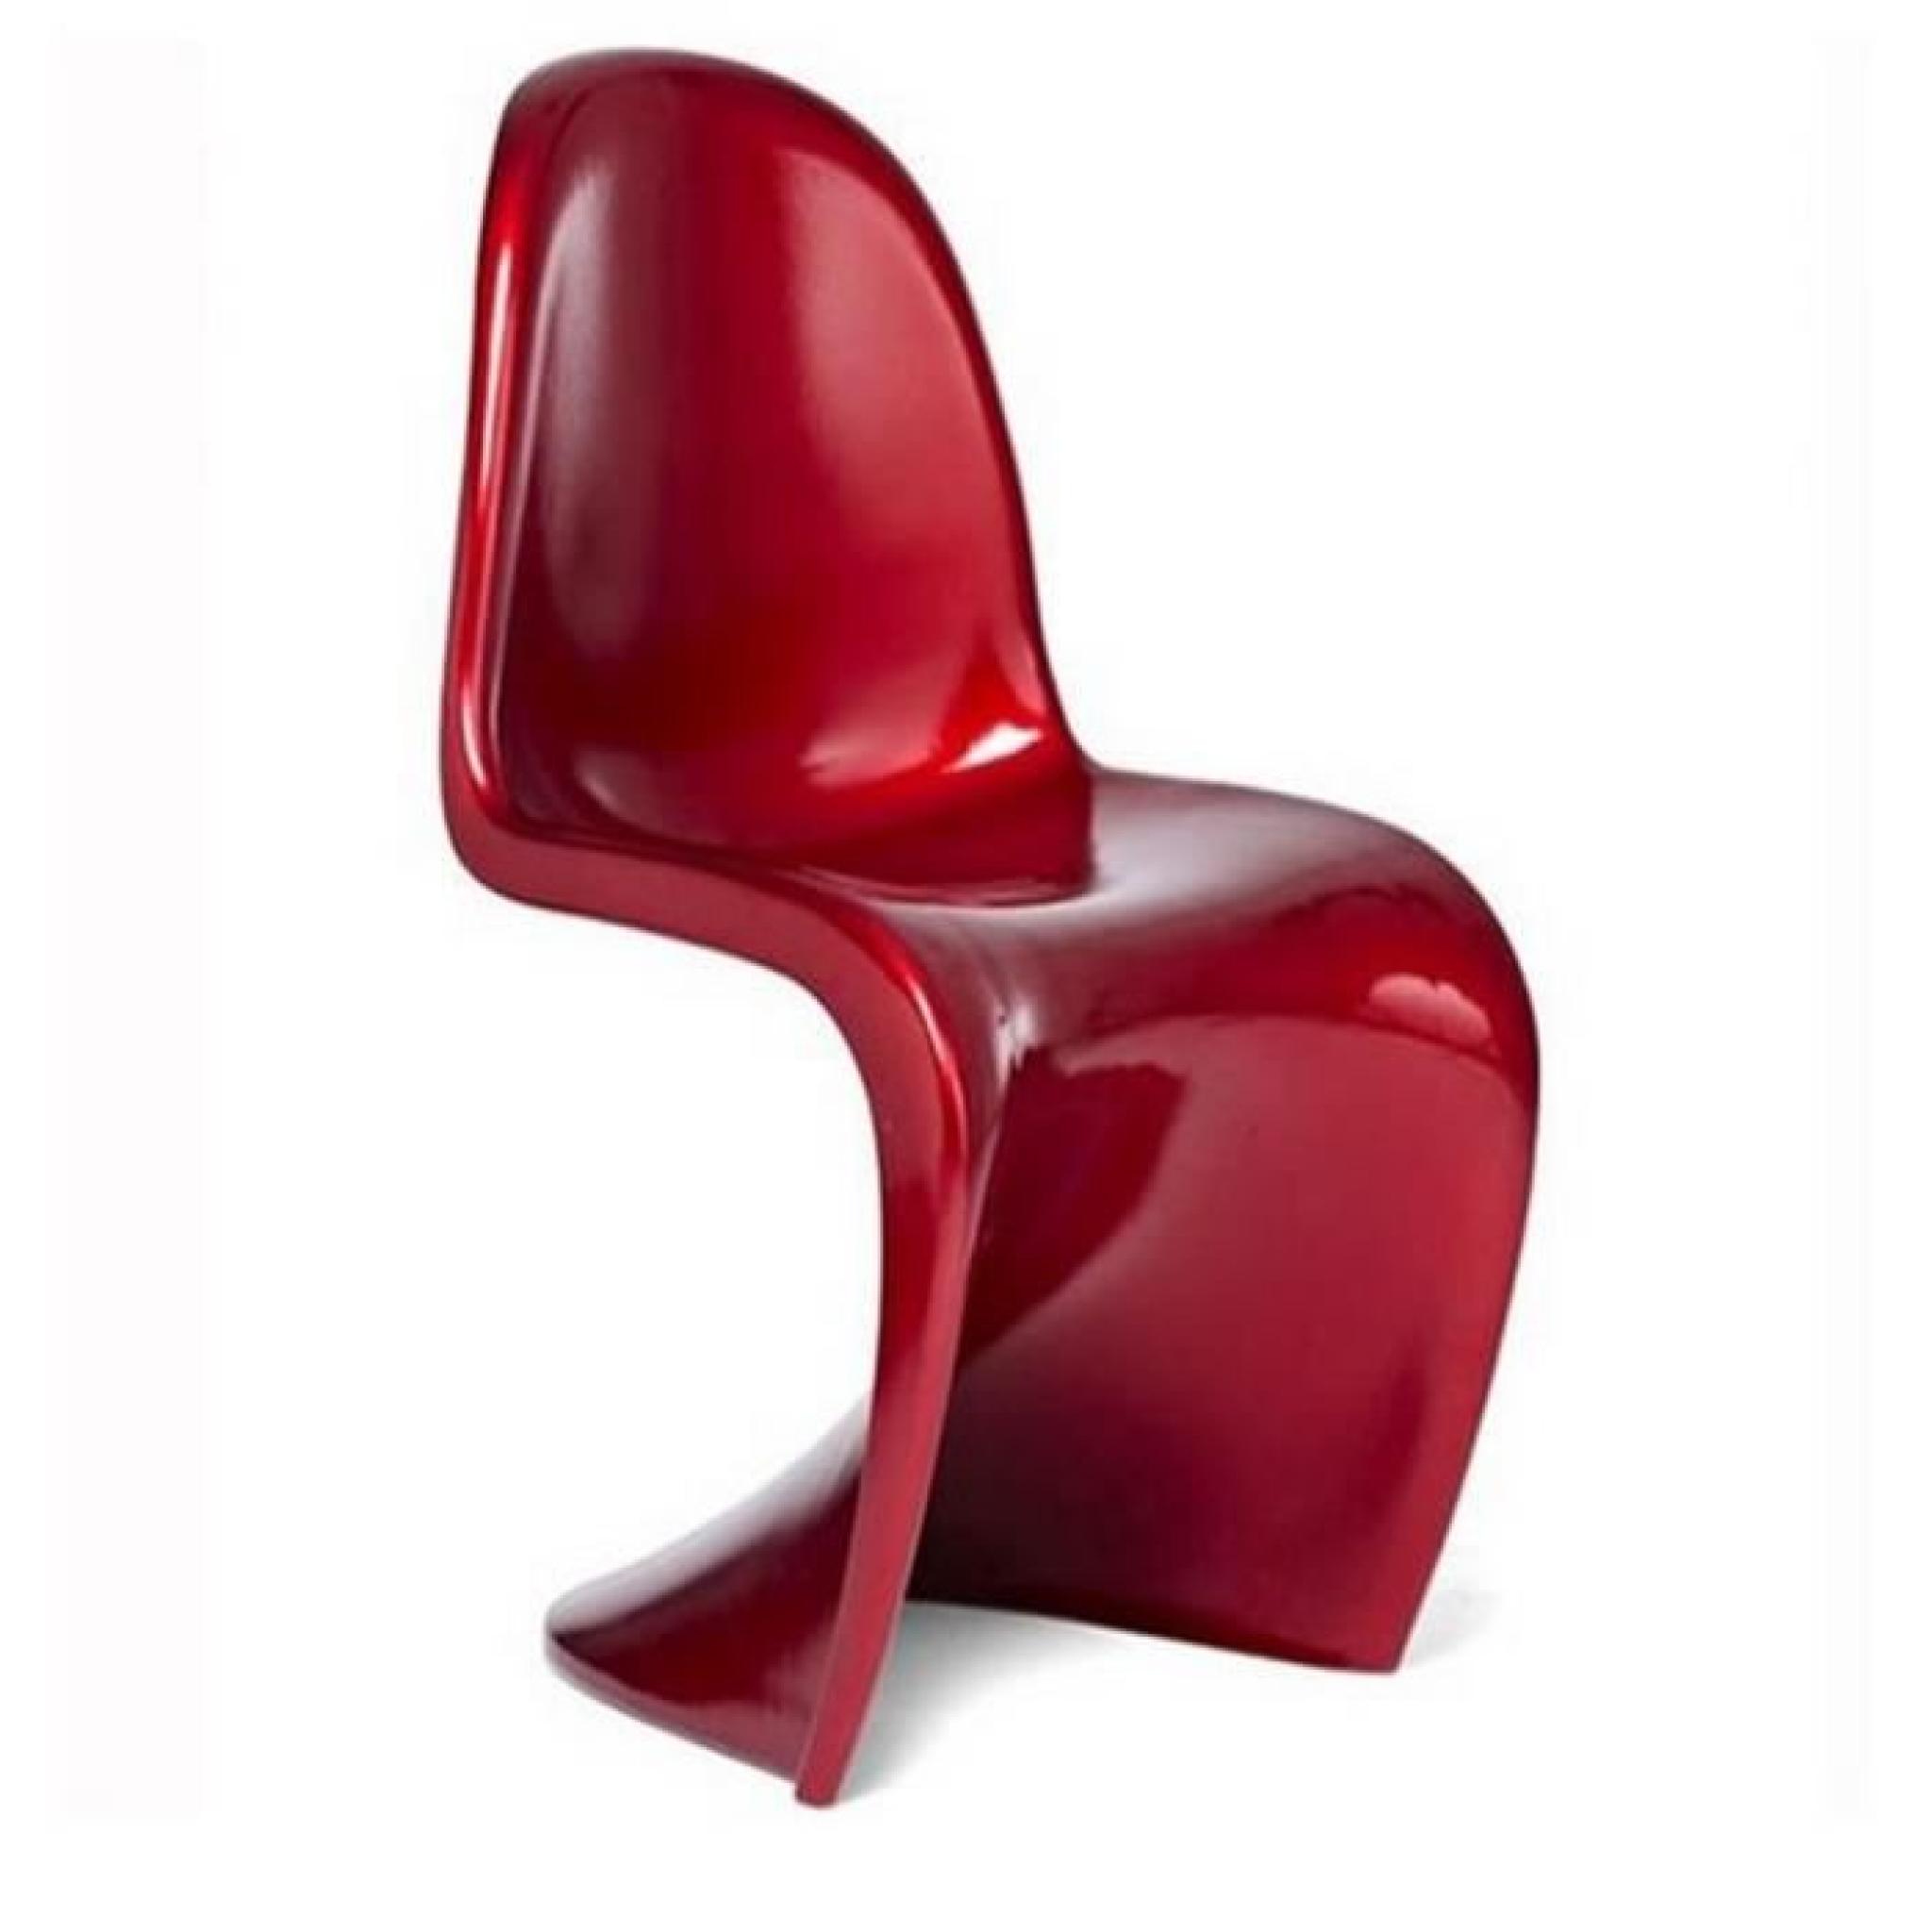 Chaise design rouge - Pantonne